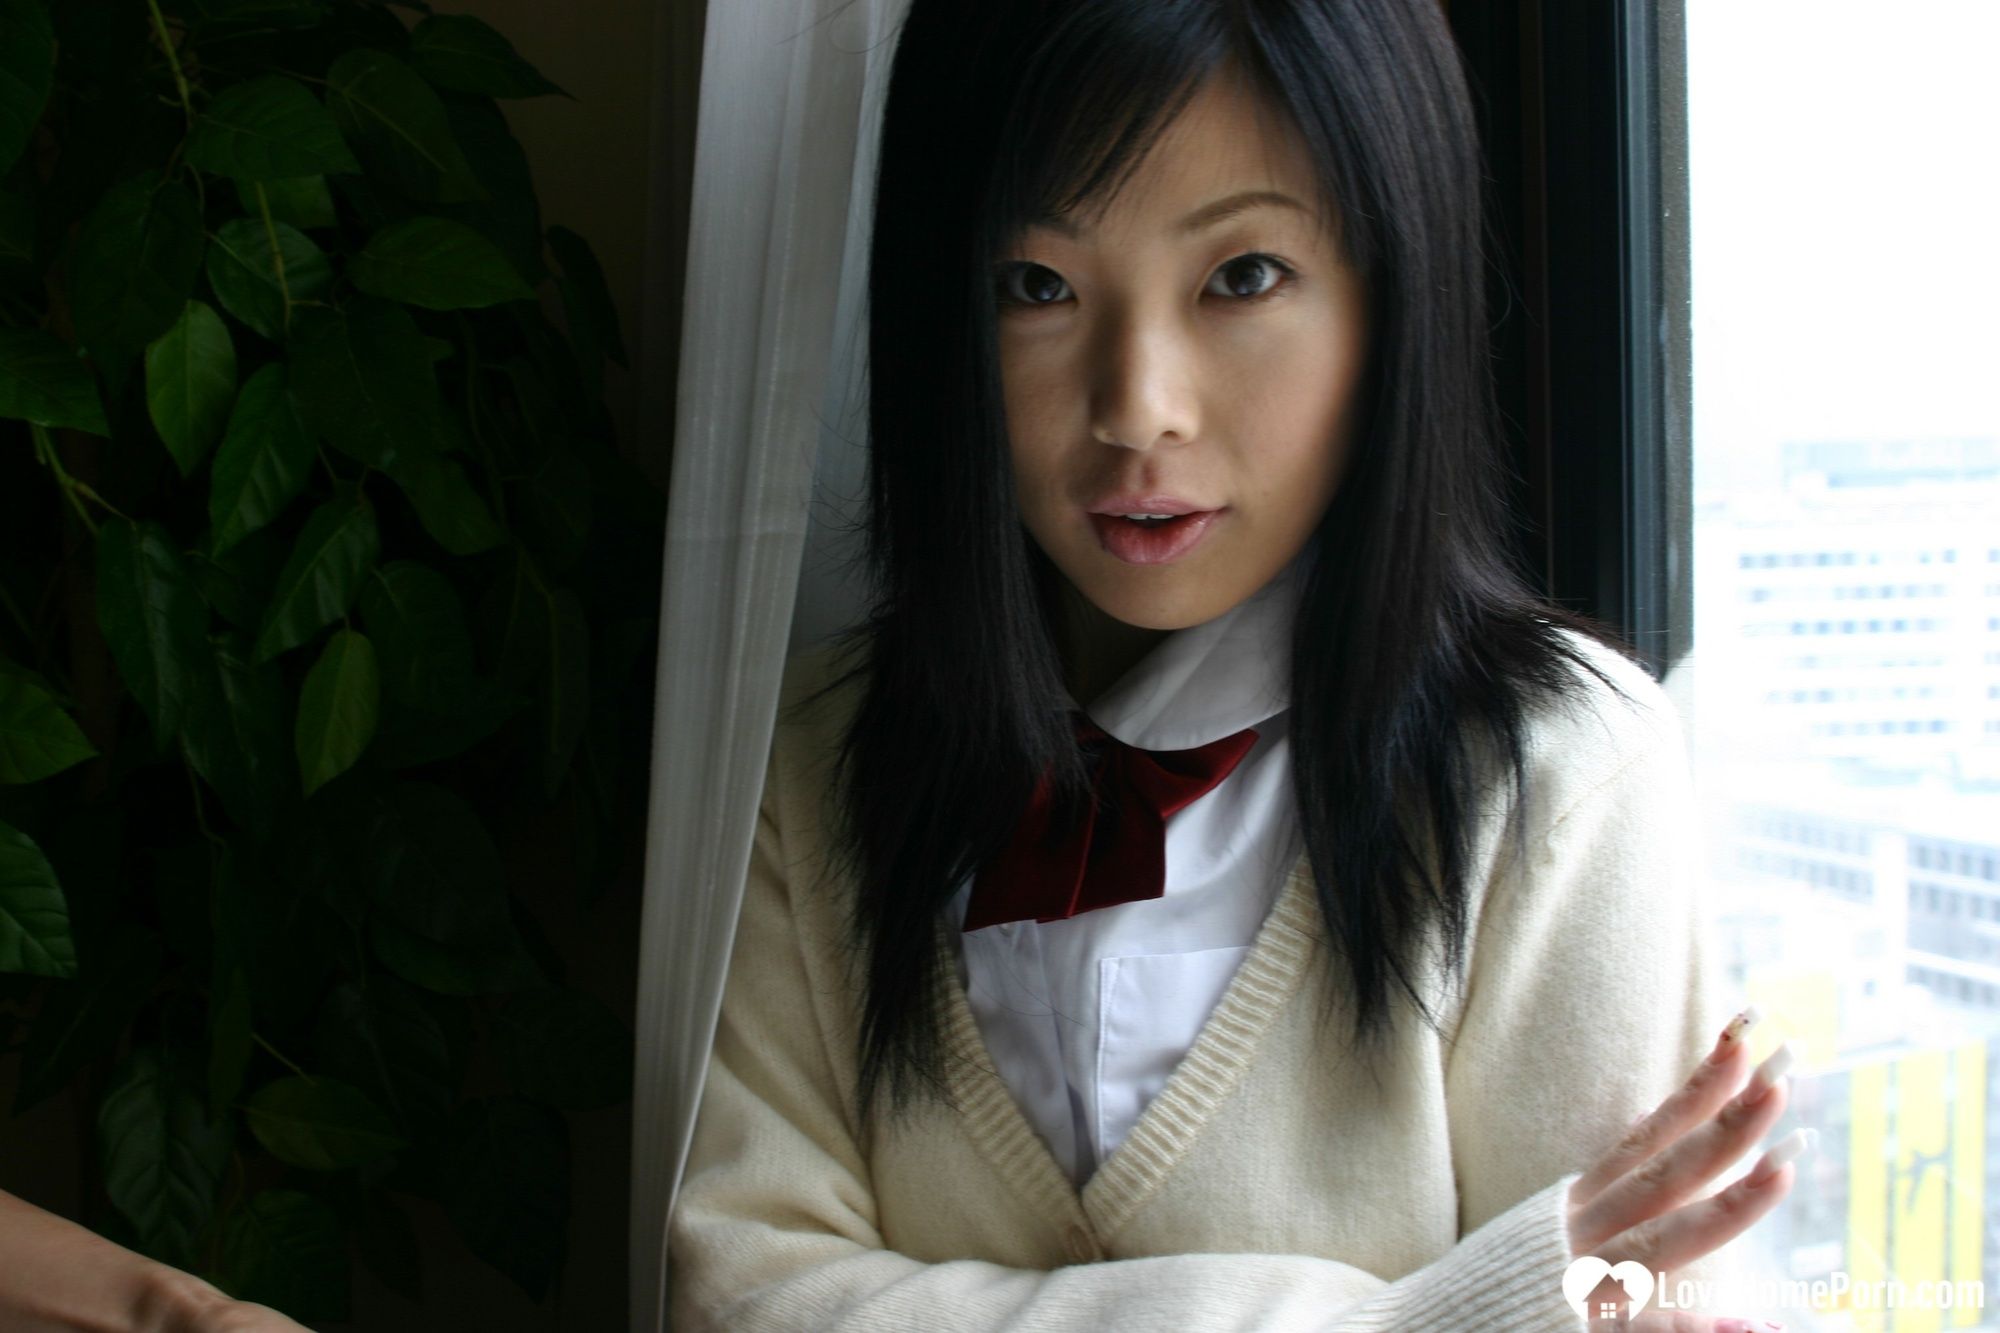 Asian schoolgirl looks for some online exposure #56